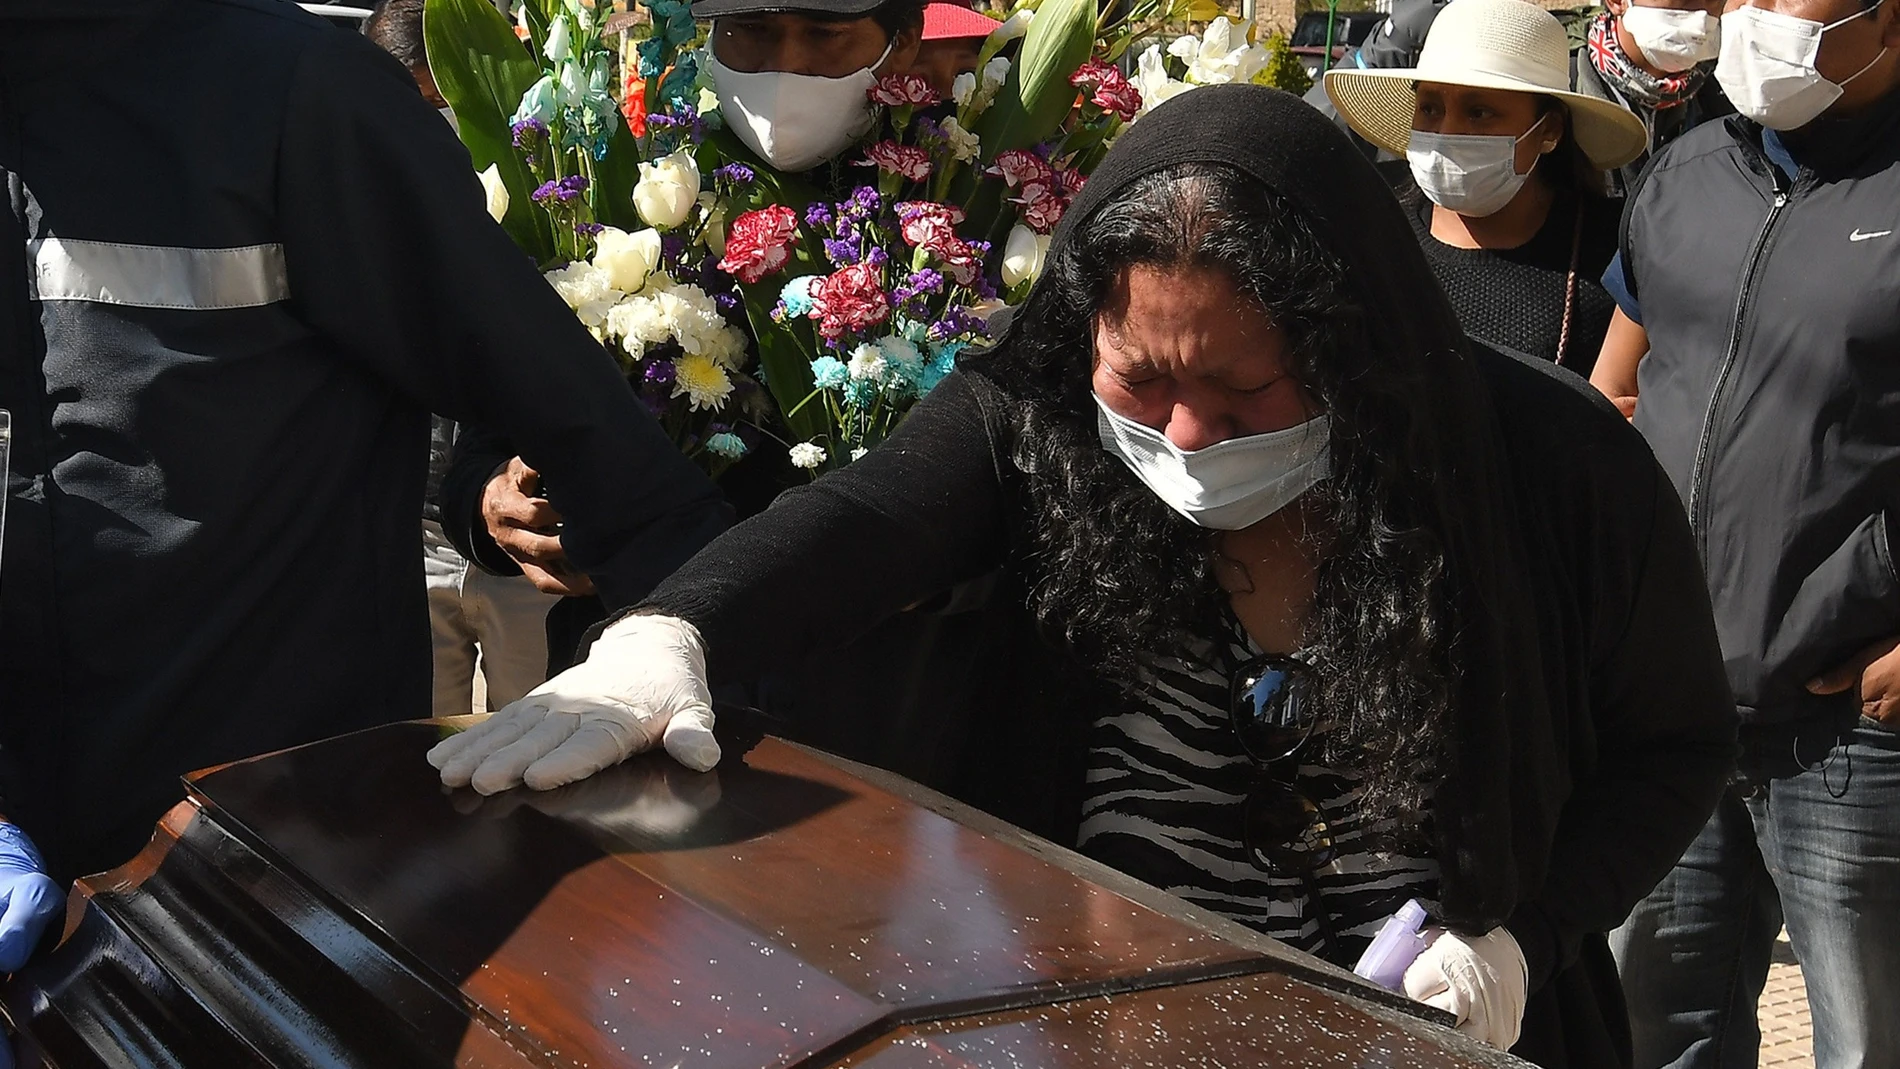 Los funerales se acumulan en una ciudad boliviana golpeada por la COVID-19